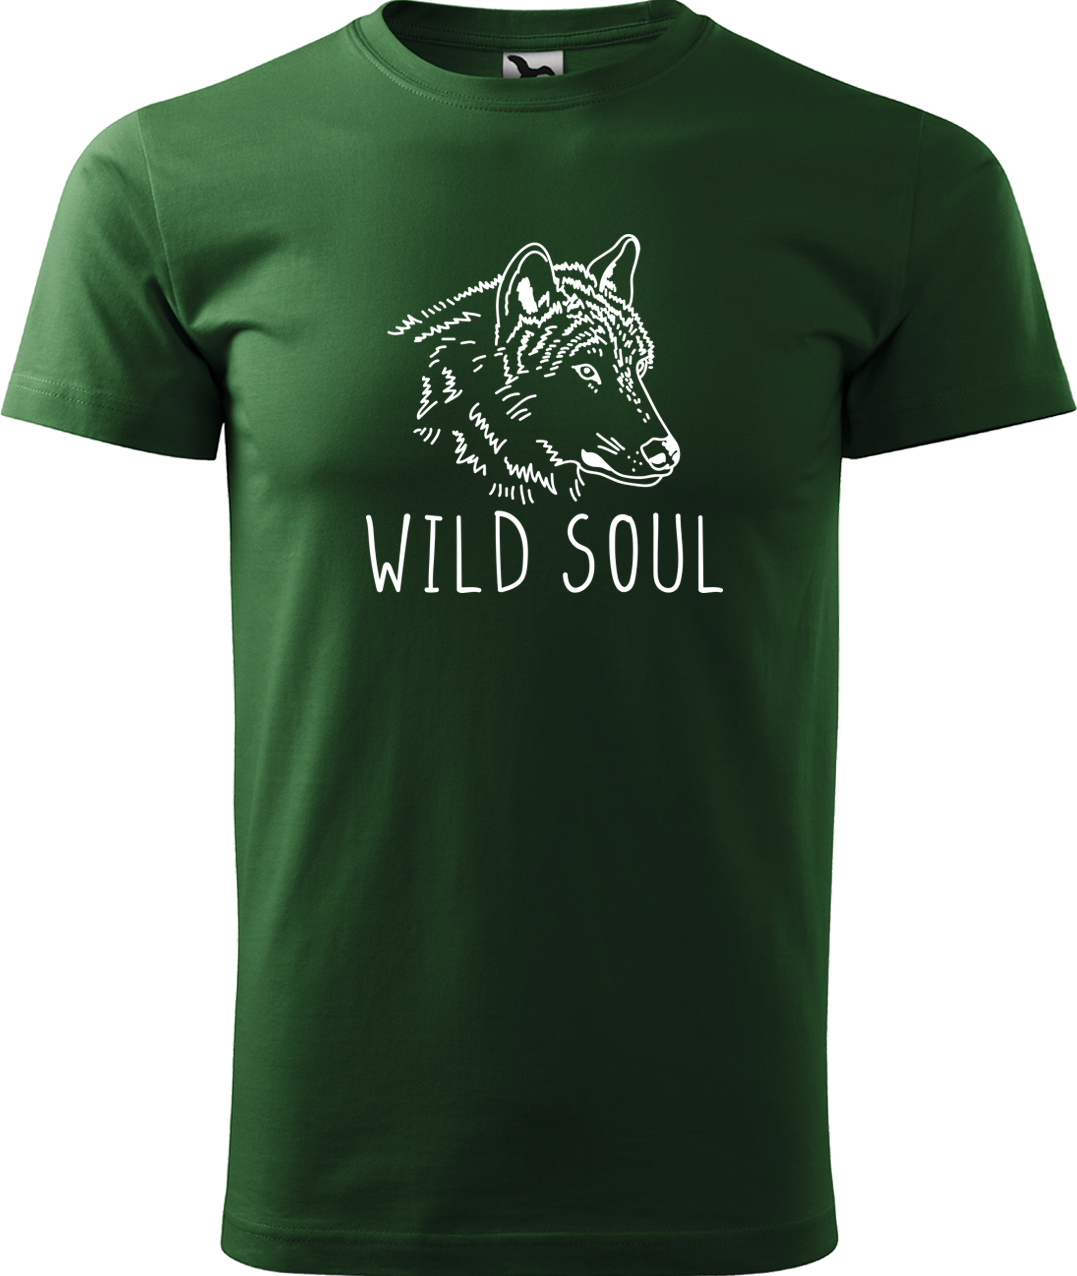 Pánské tričko s vlkem - Wild soul Velikost: S, Barva: Lahvově zelená (06), Střih: pánský